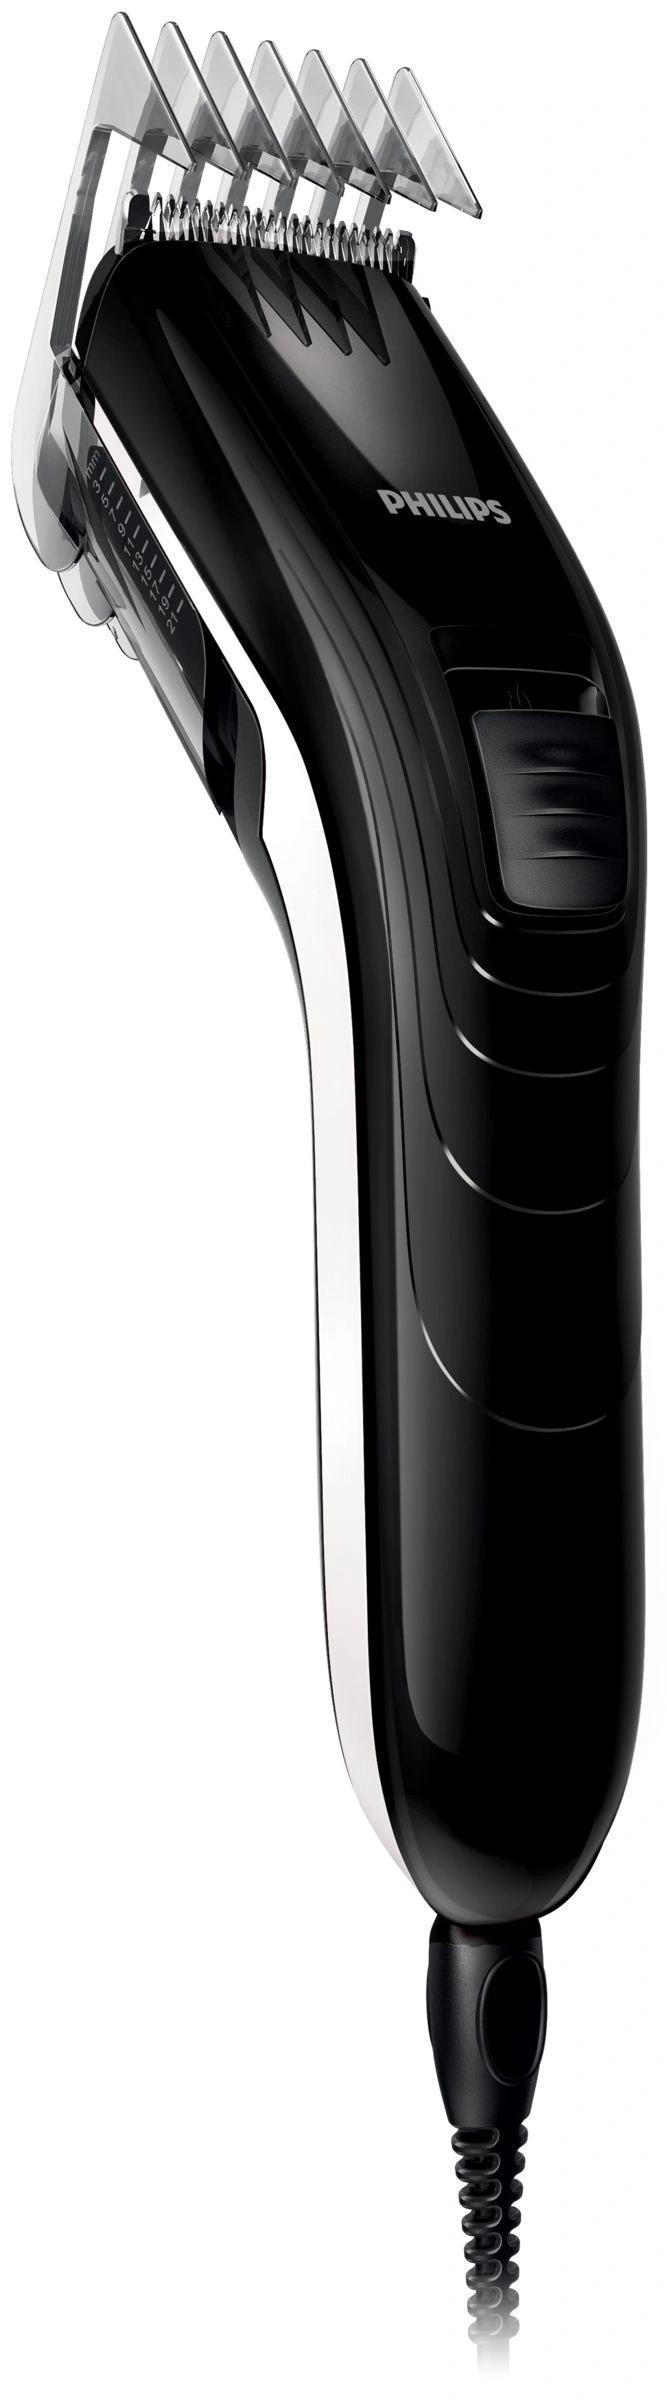 Philips QC5115/ 15 zastřihovač vlasů,  11 nastavení délky,  od 3 do 21 mm,  černý0 